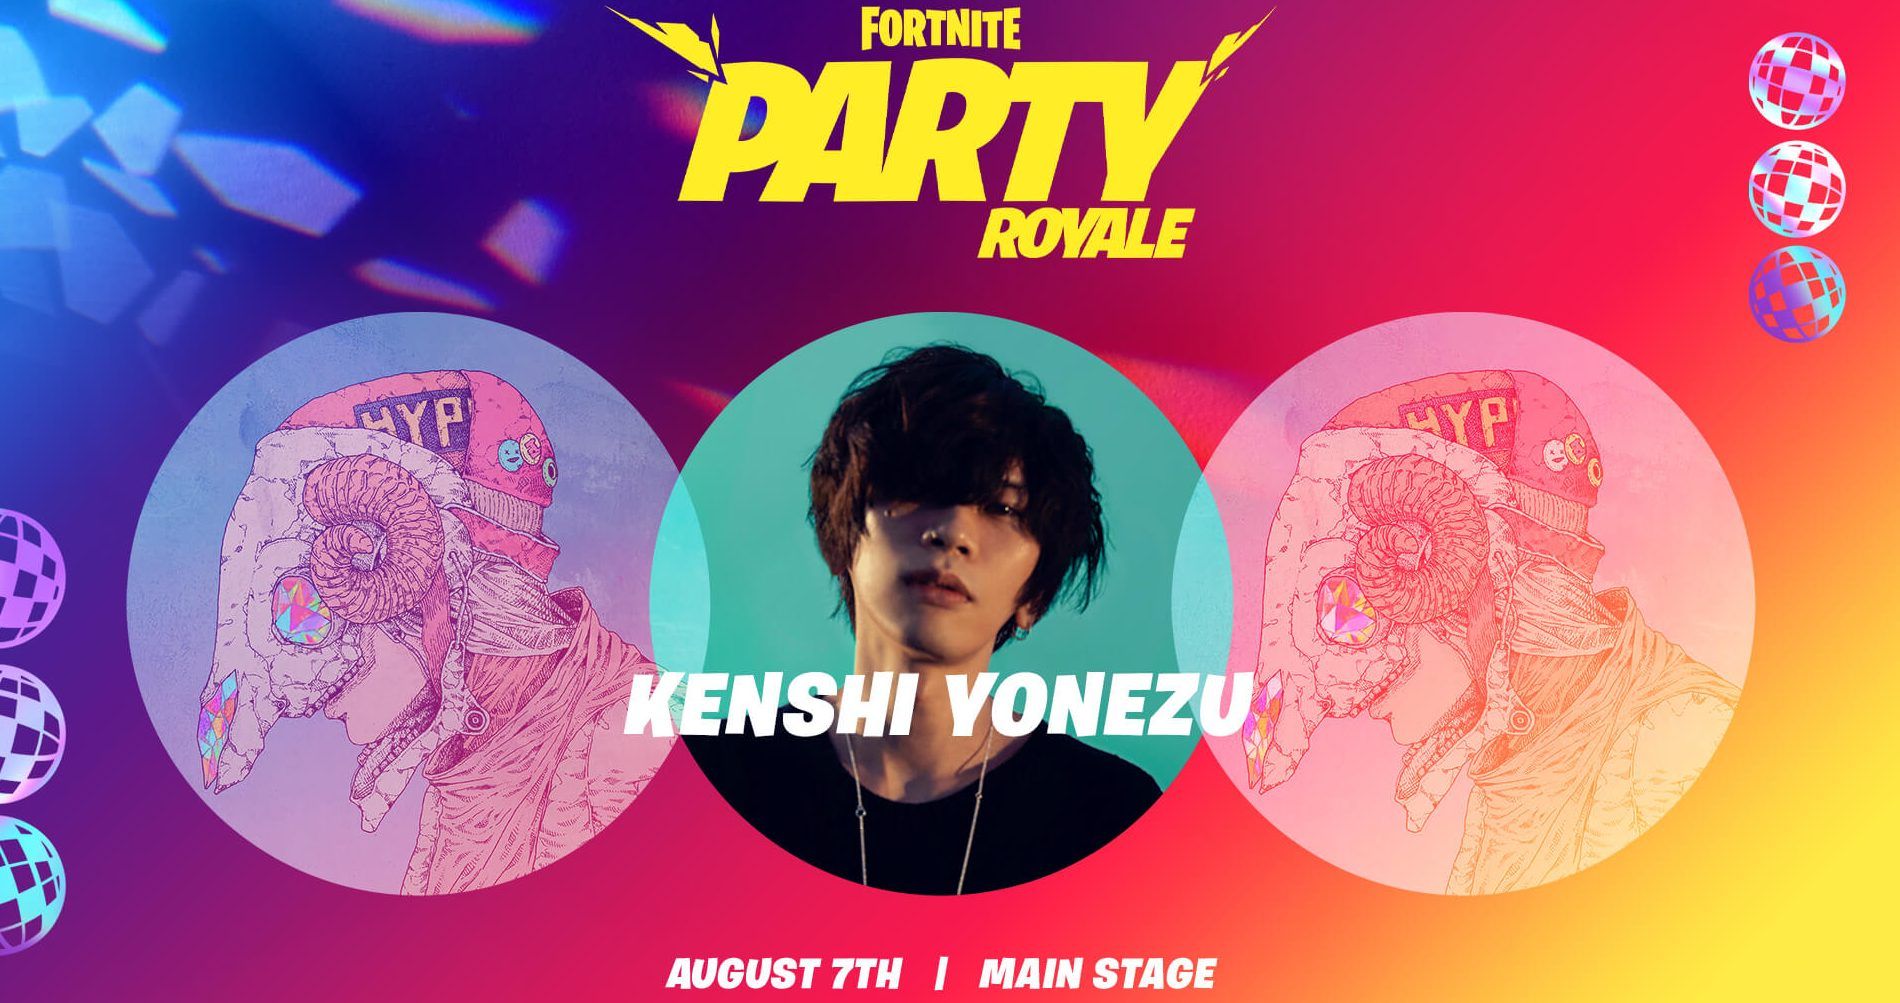 Fortnite Announces Japanese Artist Kenshi Yonezu Party Royale Event